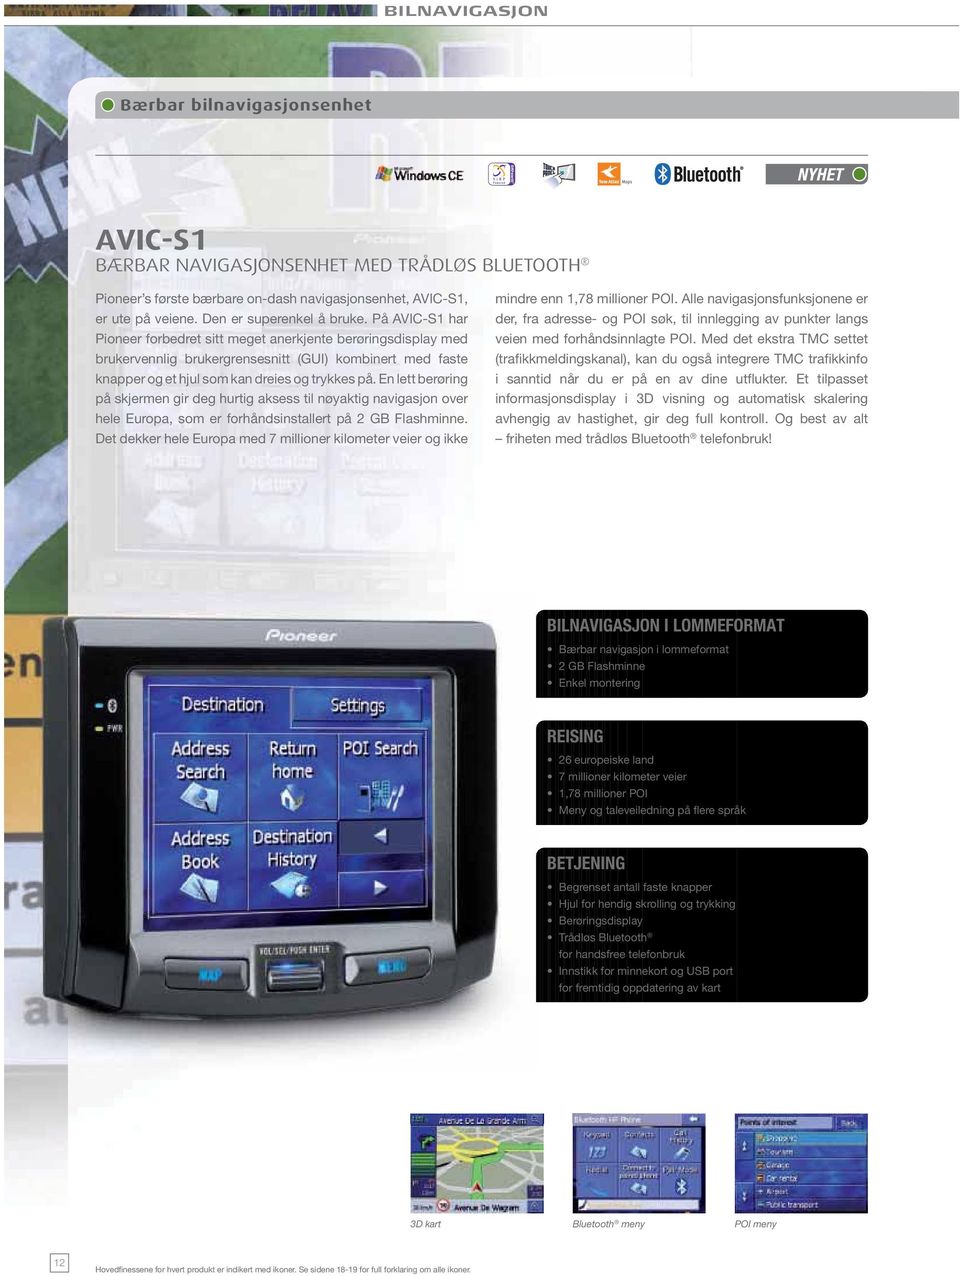 På AVIC-S1 har Pioneer forbedret sitt meget anerkjente berøringsdisplay med brukervennlig brukergrensesnitt (GUI) kombinert med faste knapper og et hjul som kan dreies og trykkes på.